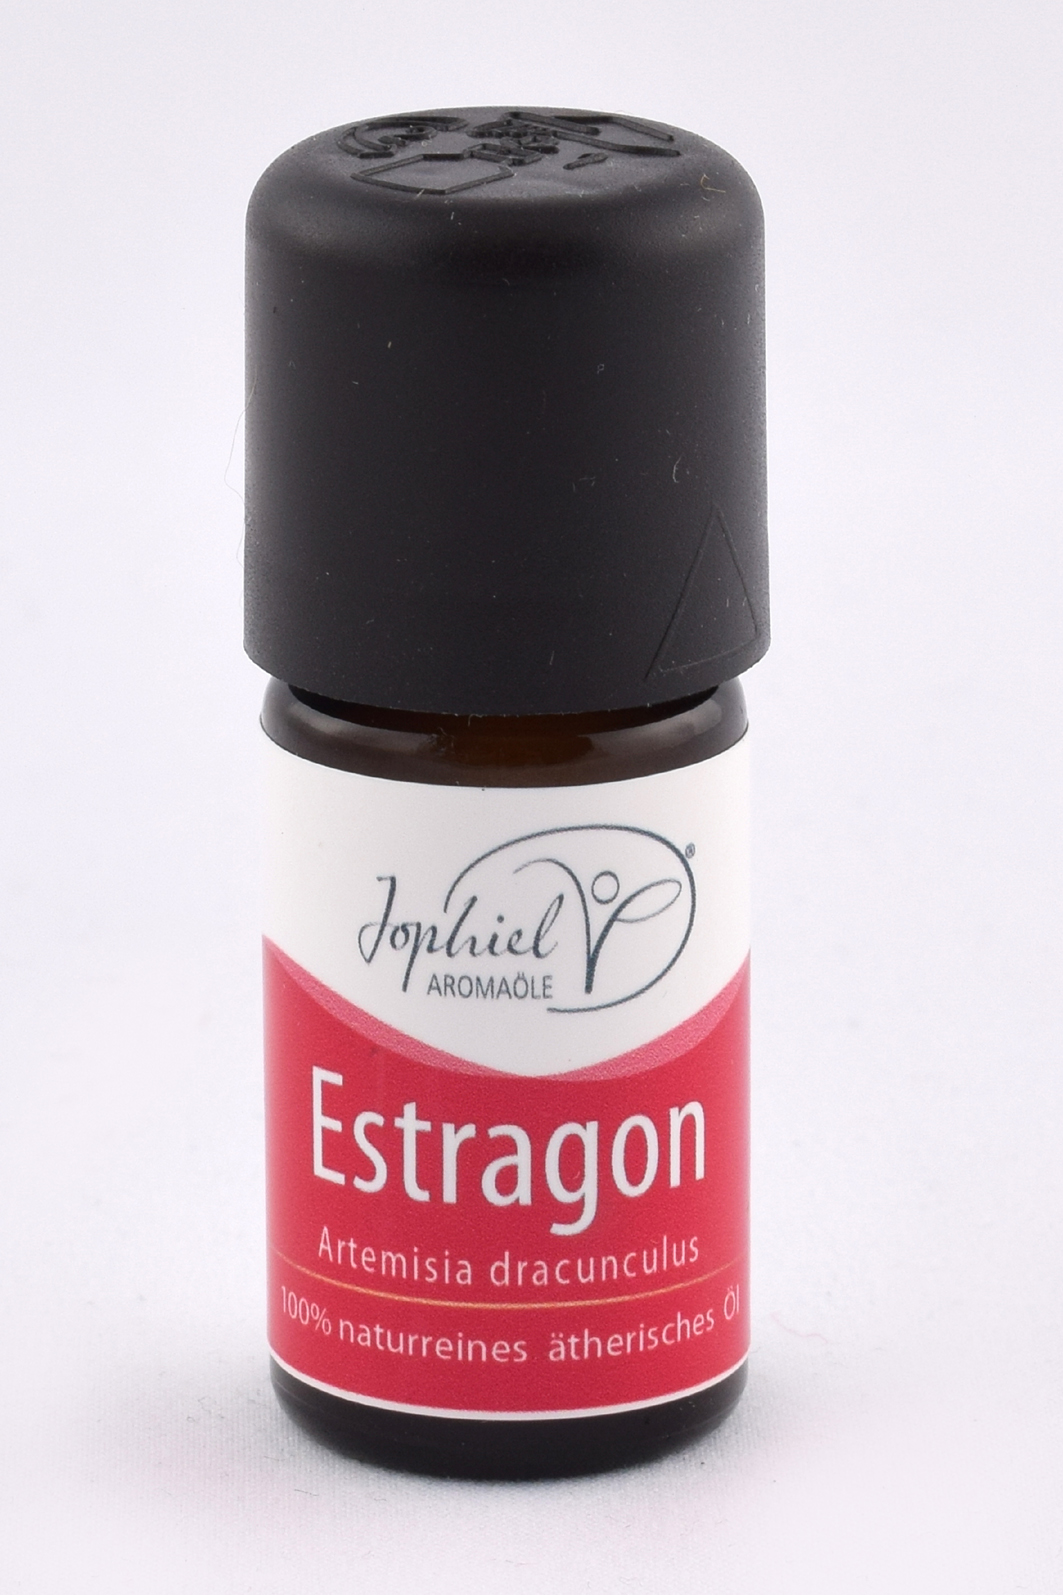 Estragon Öl Bio 5 ml